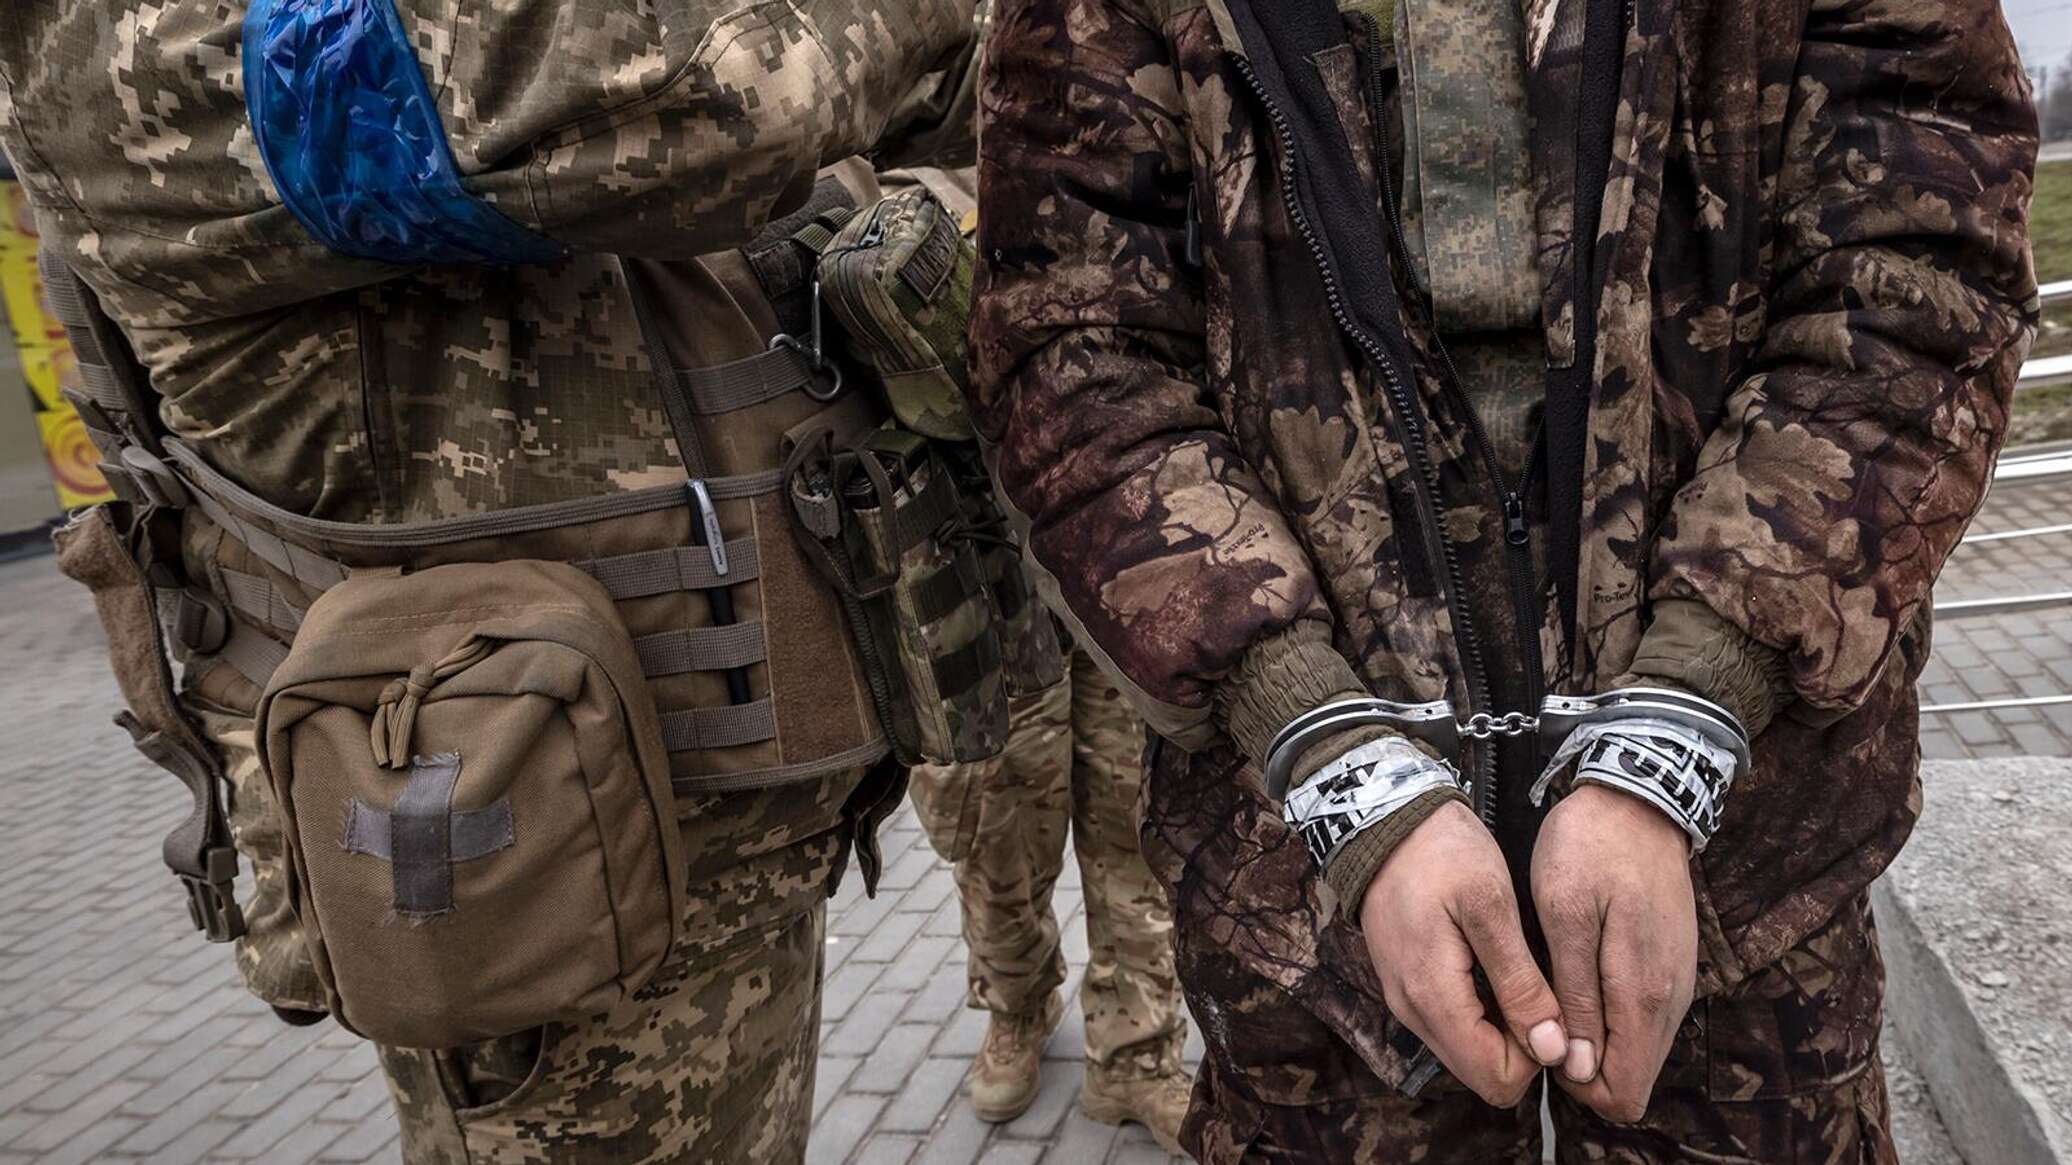 Фото пленных российских солдат на украине